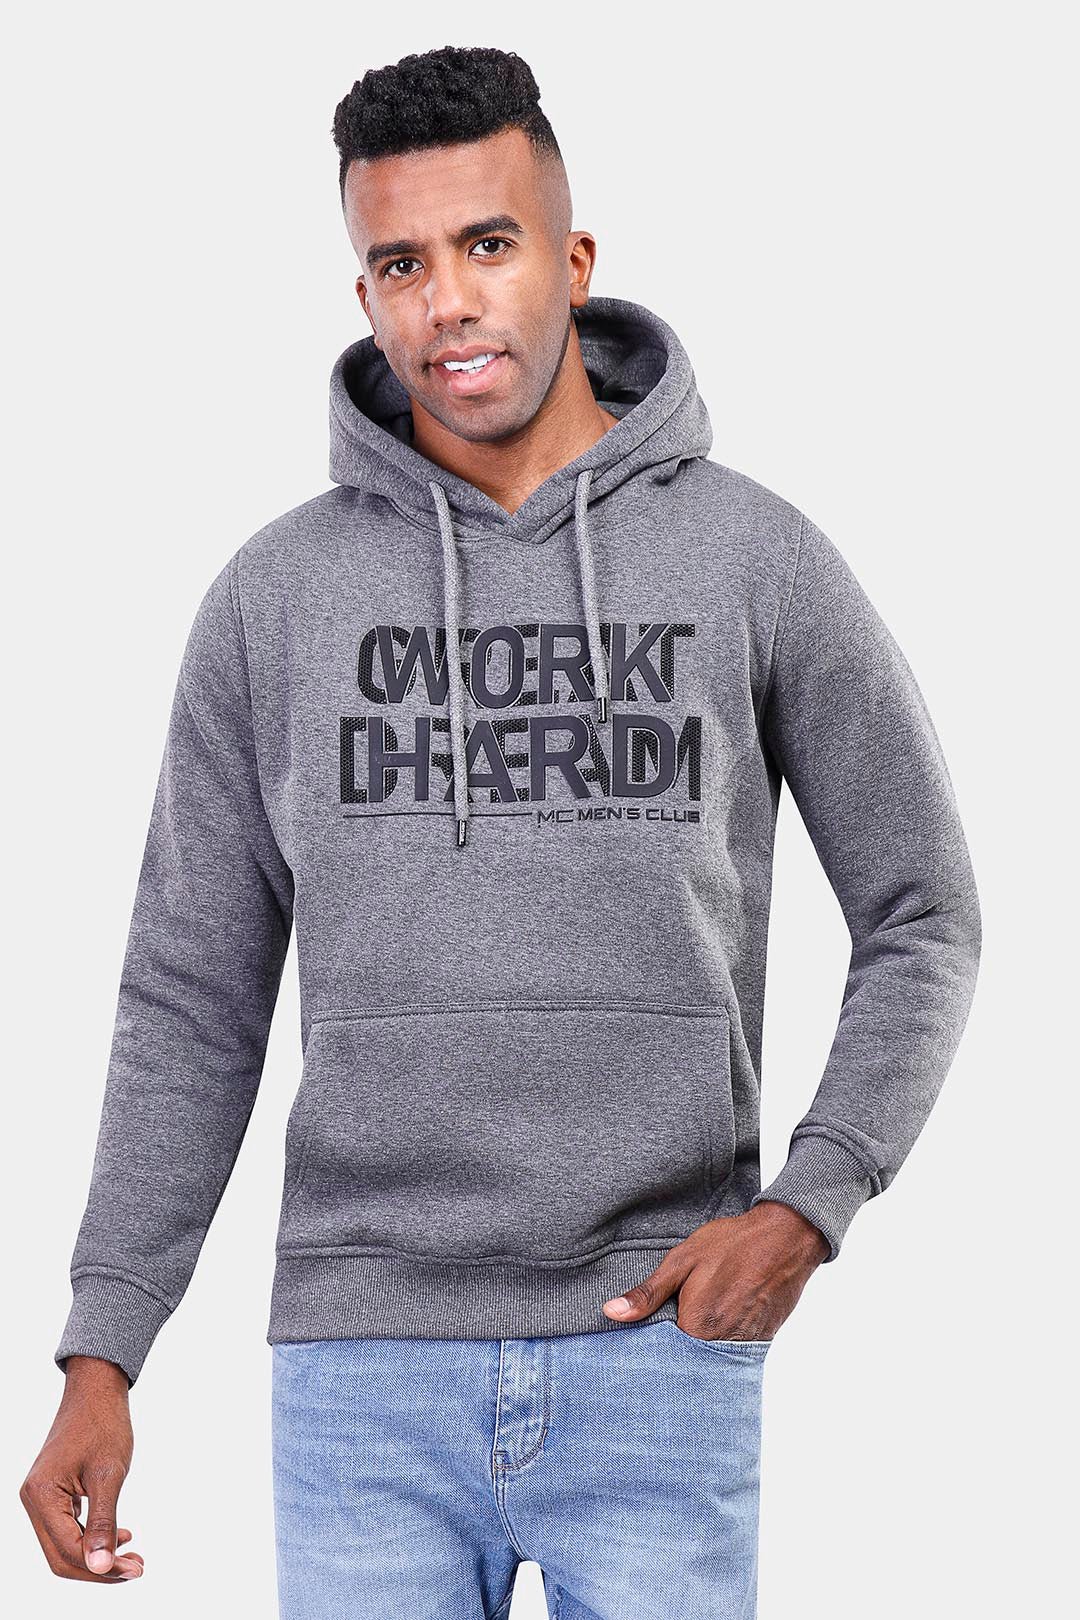 Dark Grey Printed Hoodie Sweatshirt